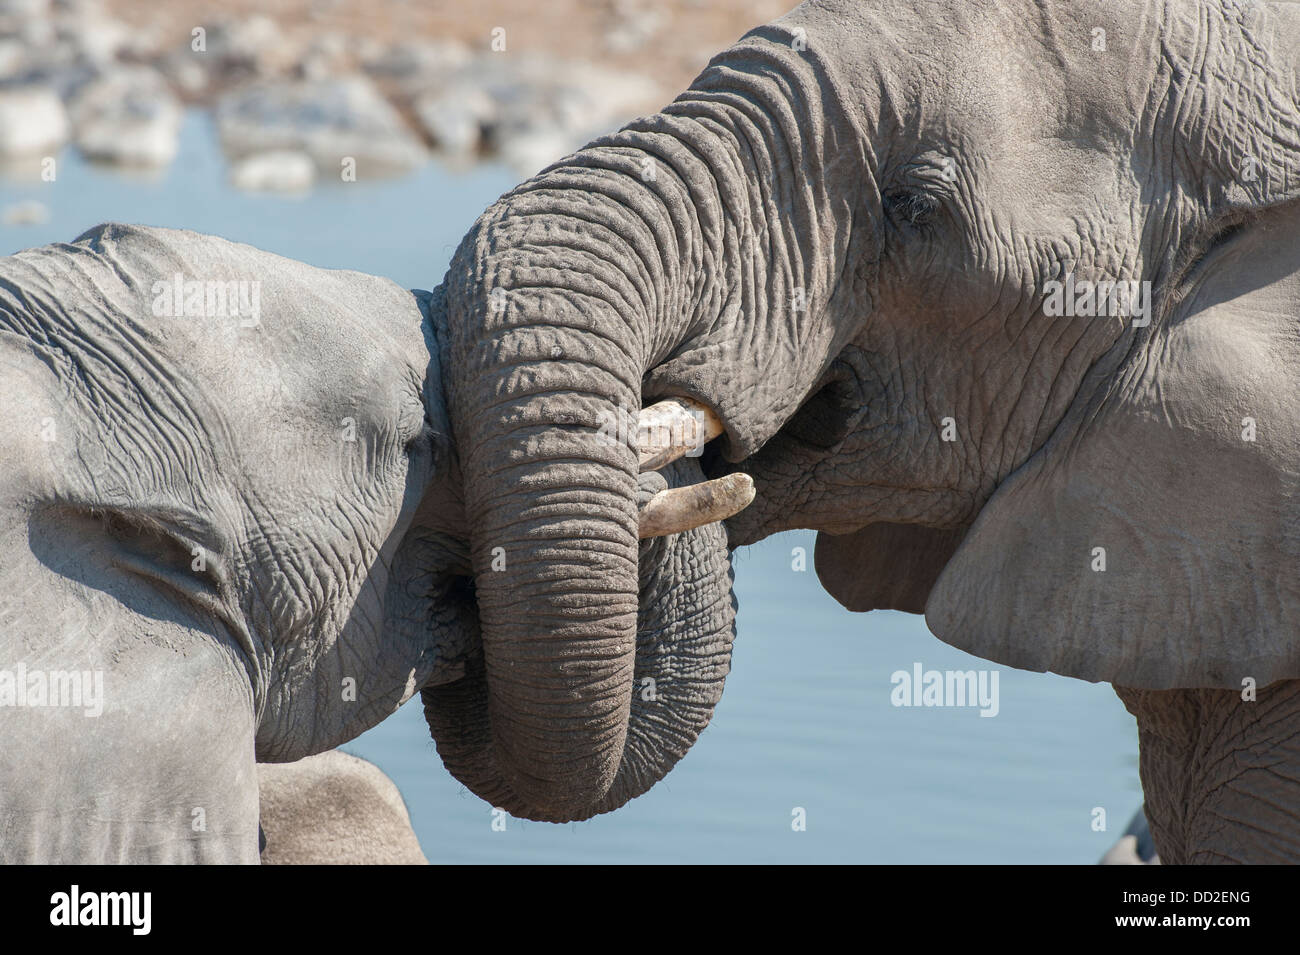 Portrait de deux éléphants d'Afrique (Loxodonta africana) socialiser les lignes de torsion à Halali waterhole, Etosha Nationalpark, Namibie Banque D'Images